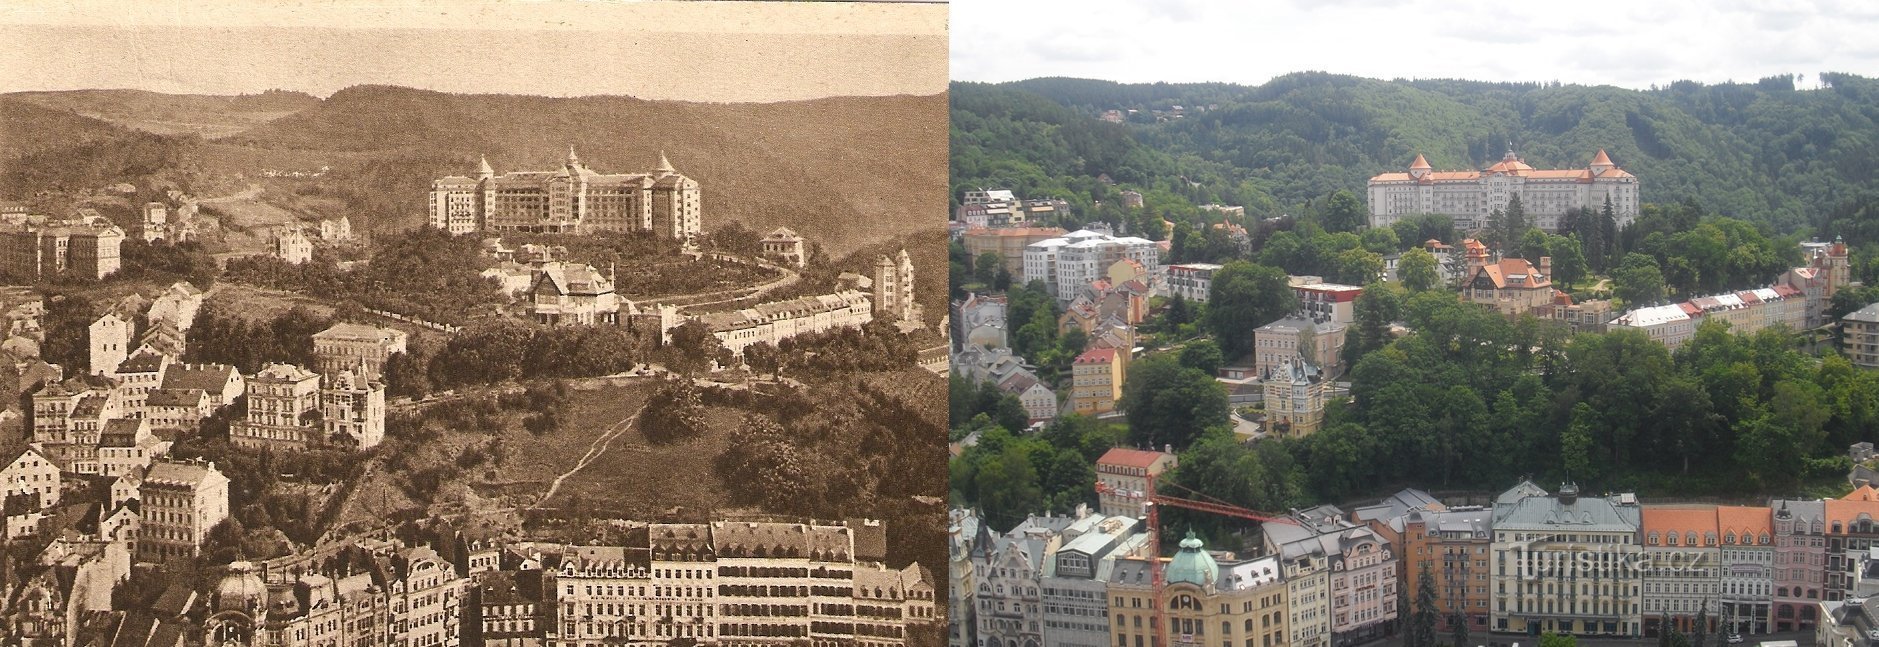 Karlovy Vary trên các chế độ xem cũ hơn và ảnh hiện tại